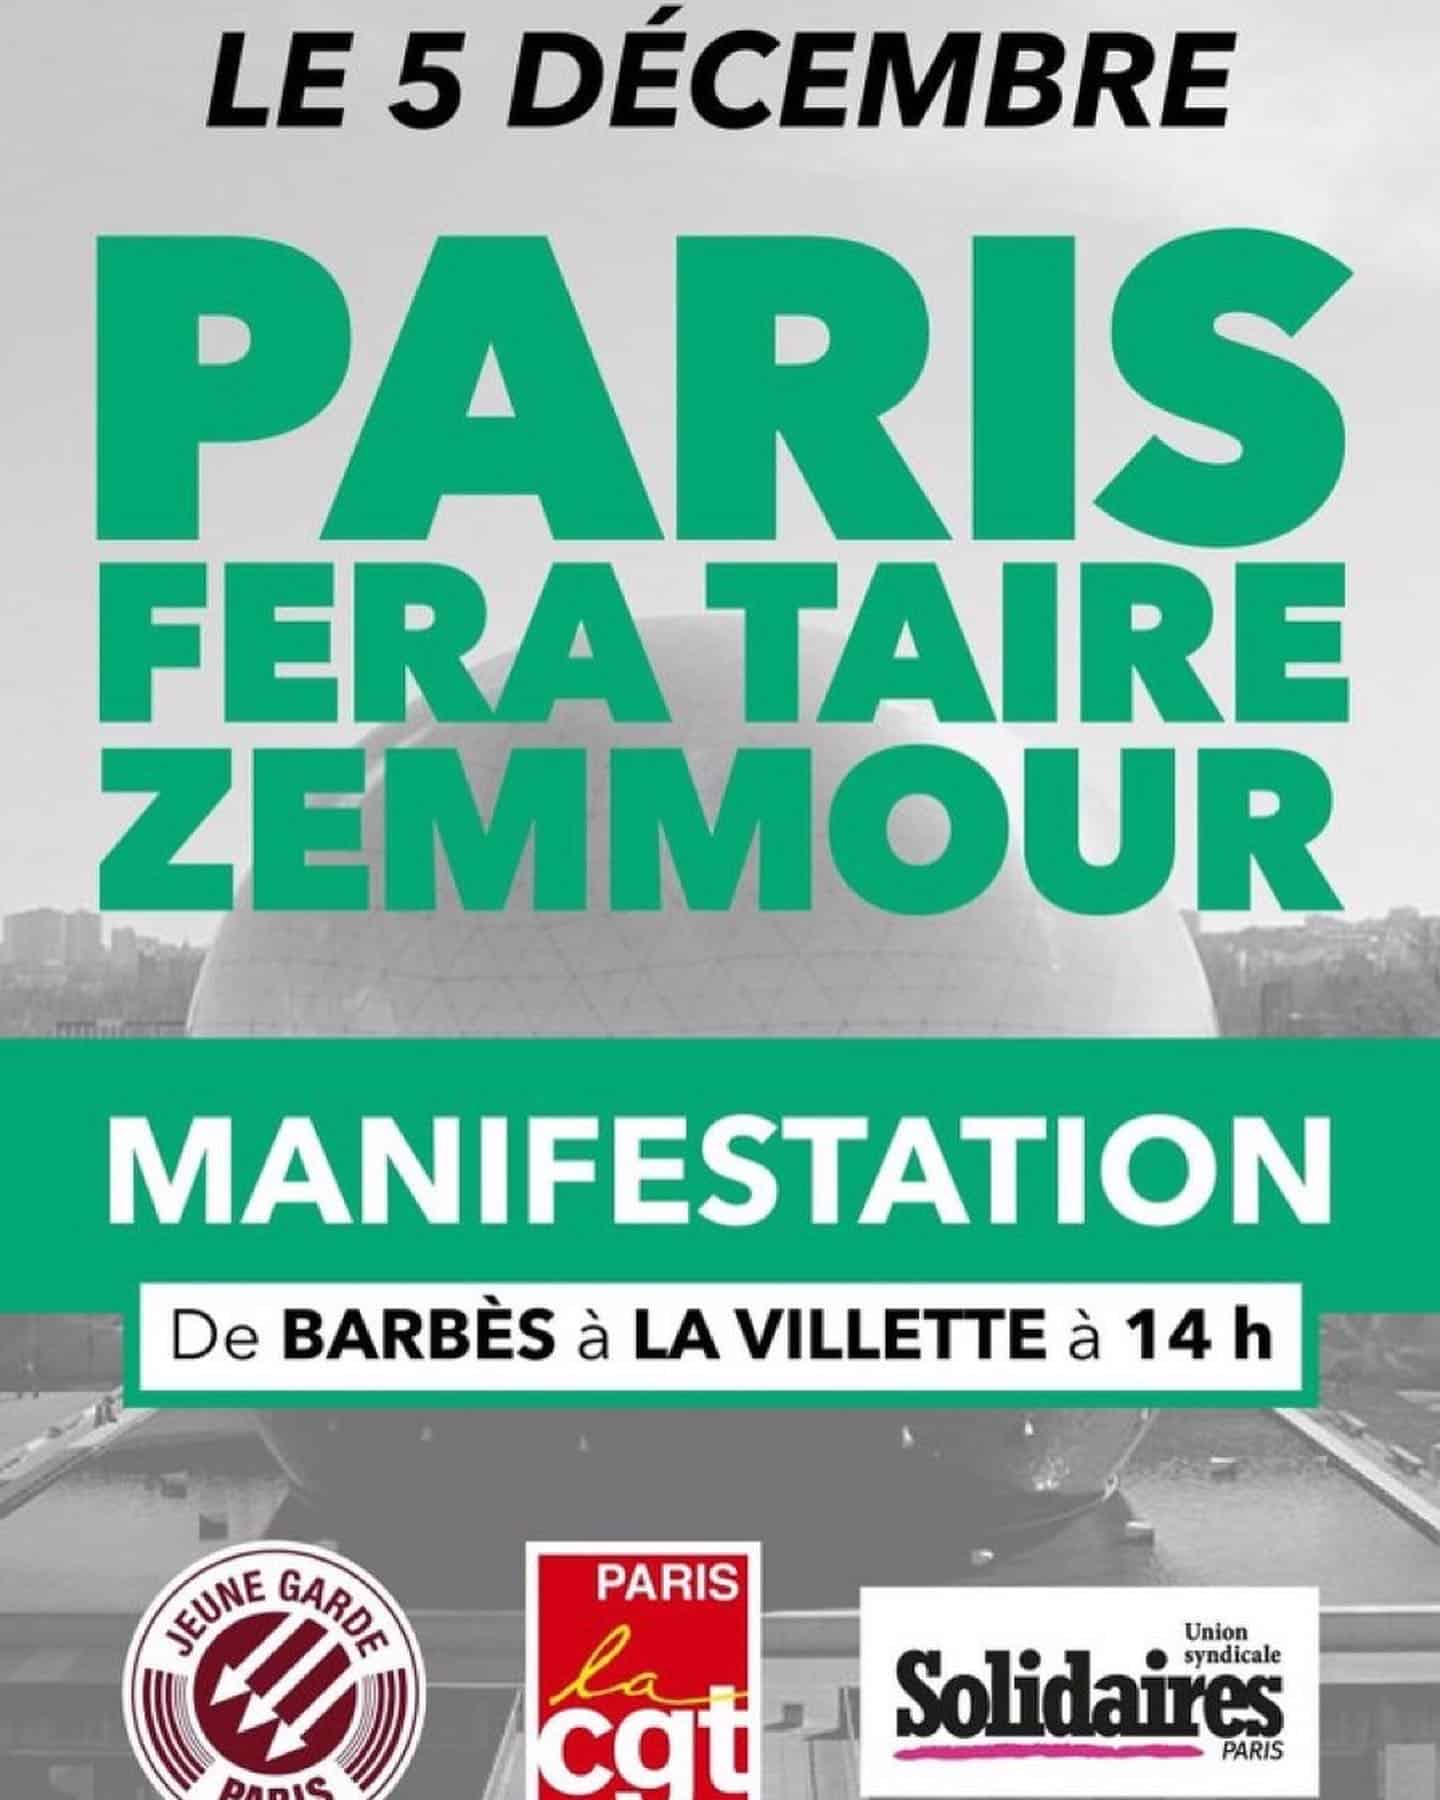 Tous ensemble contre le fascisme et le racisme, pas de quartier pour Zemmour à Paris !